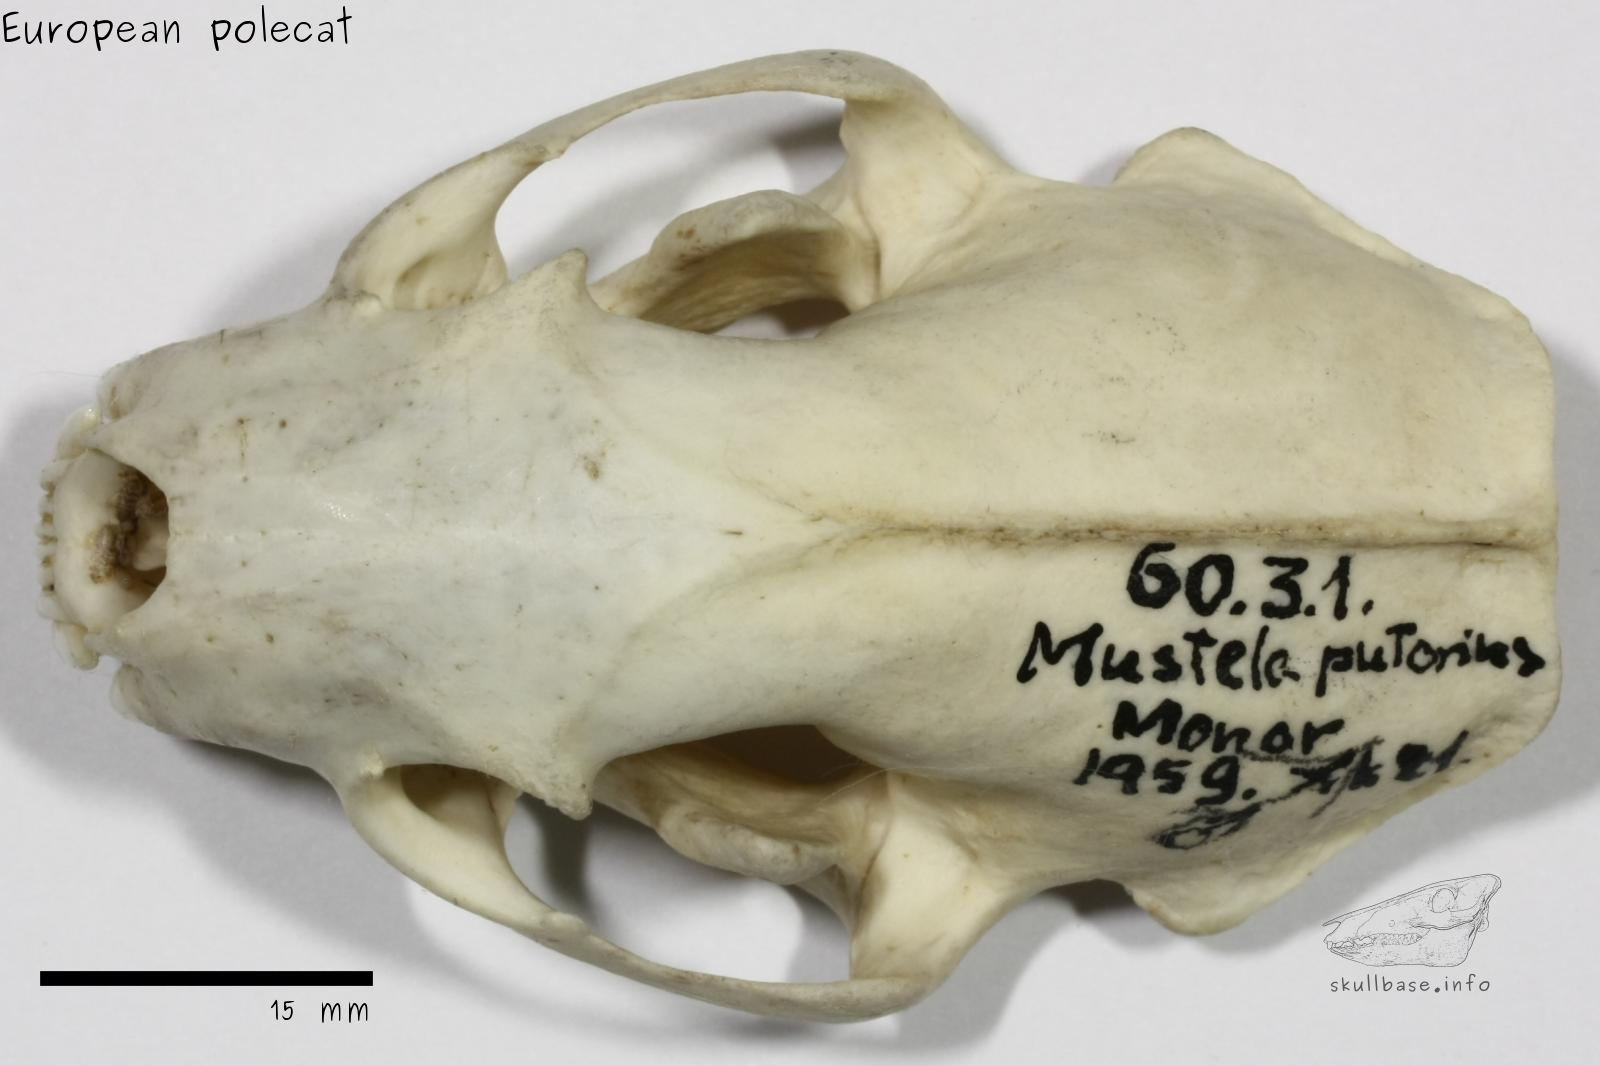 European polecat (Mustela putorius) skull dorsal view